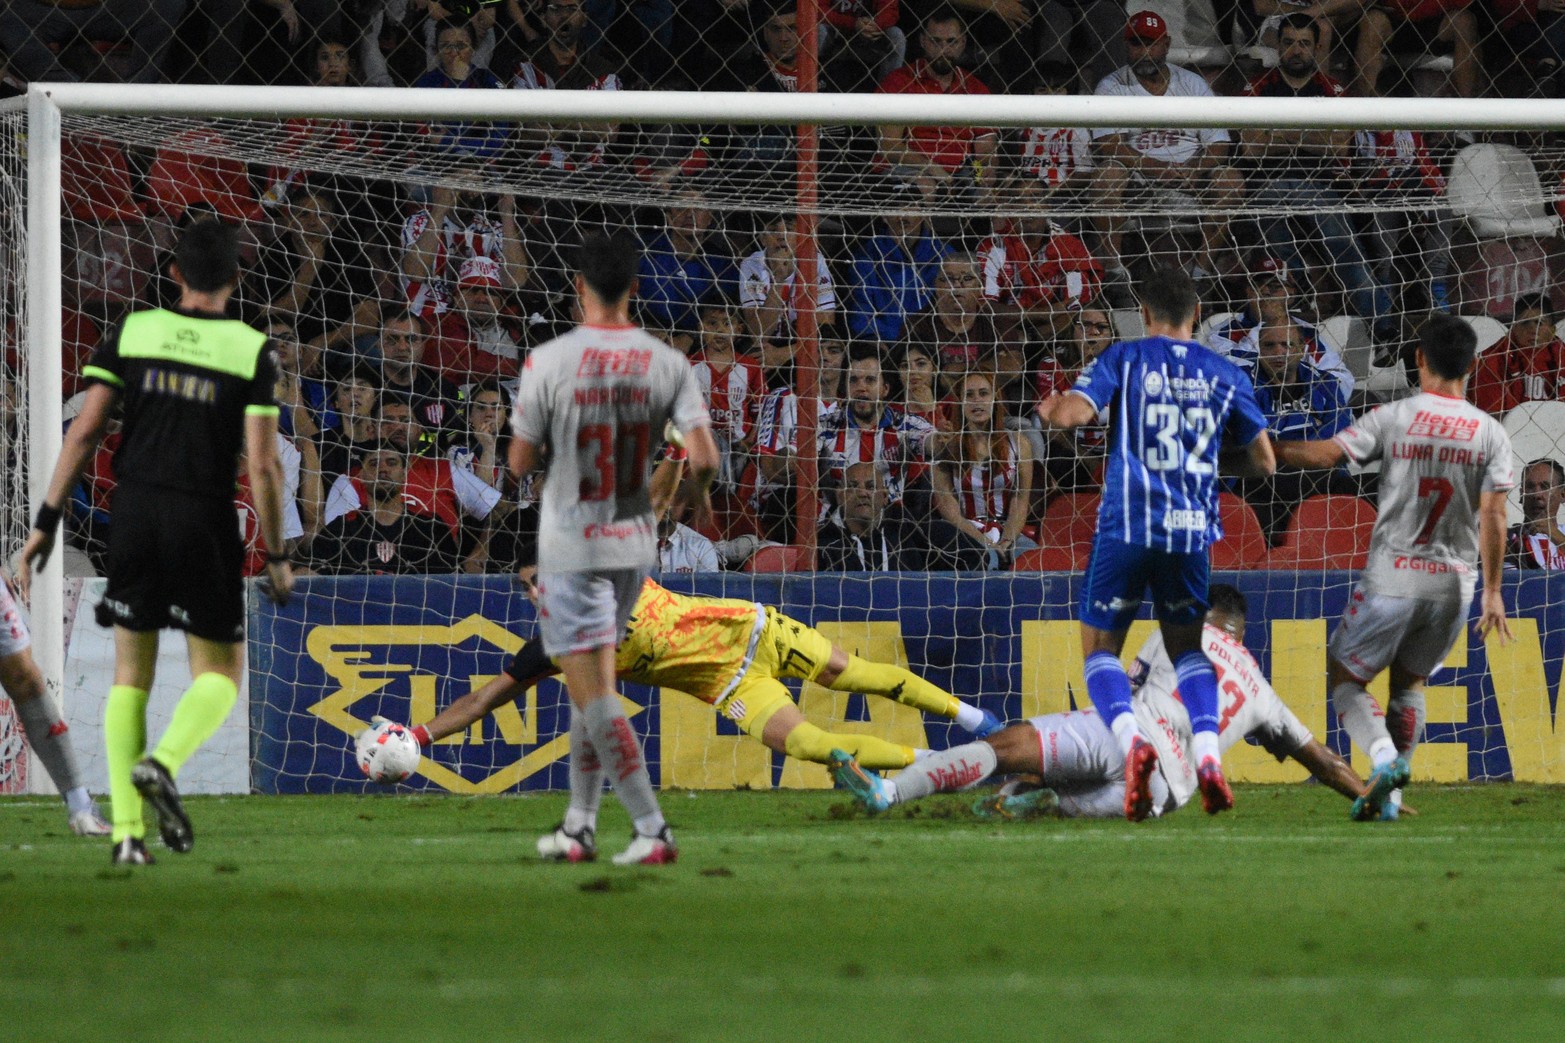 Sebastián Mele, otra vez atajando pelotas que tenían destino de gol. Unión le ganó al encumbrado Godoy Cruz 2 a 1.